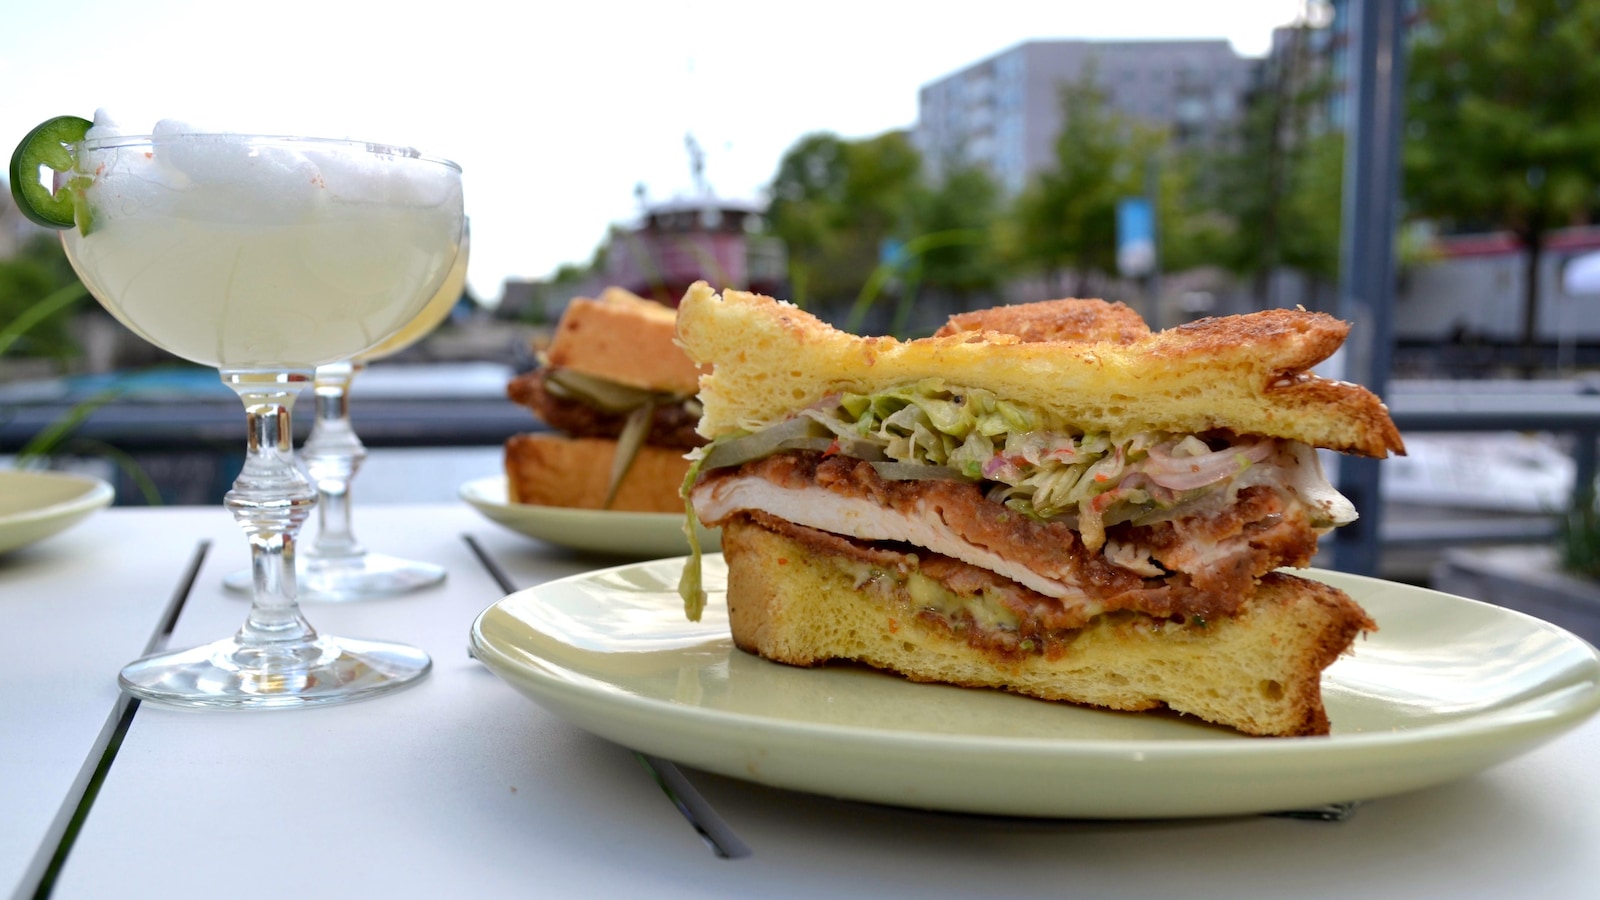 Un sandwich au poulet déposé sur une assiette accompagné d'un cocktail.